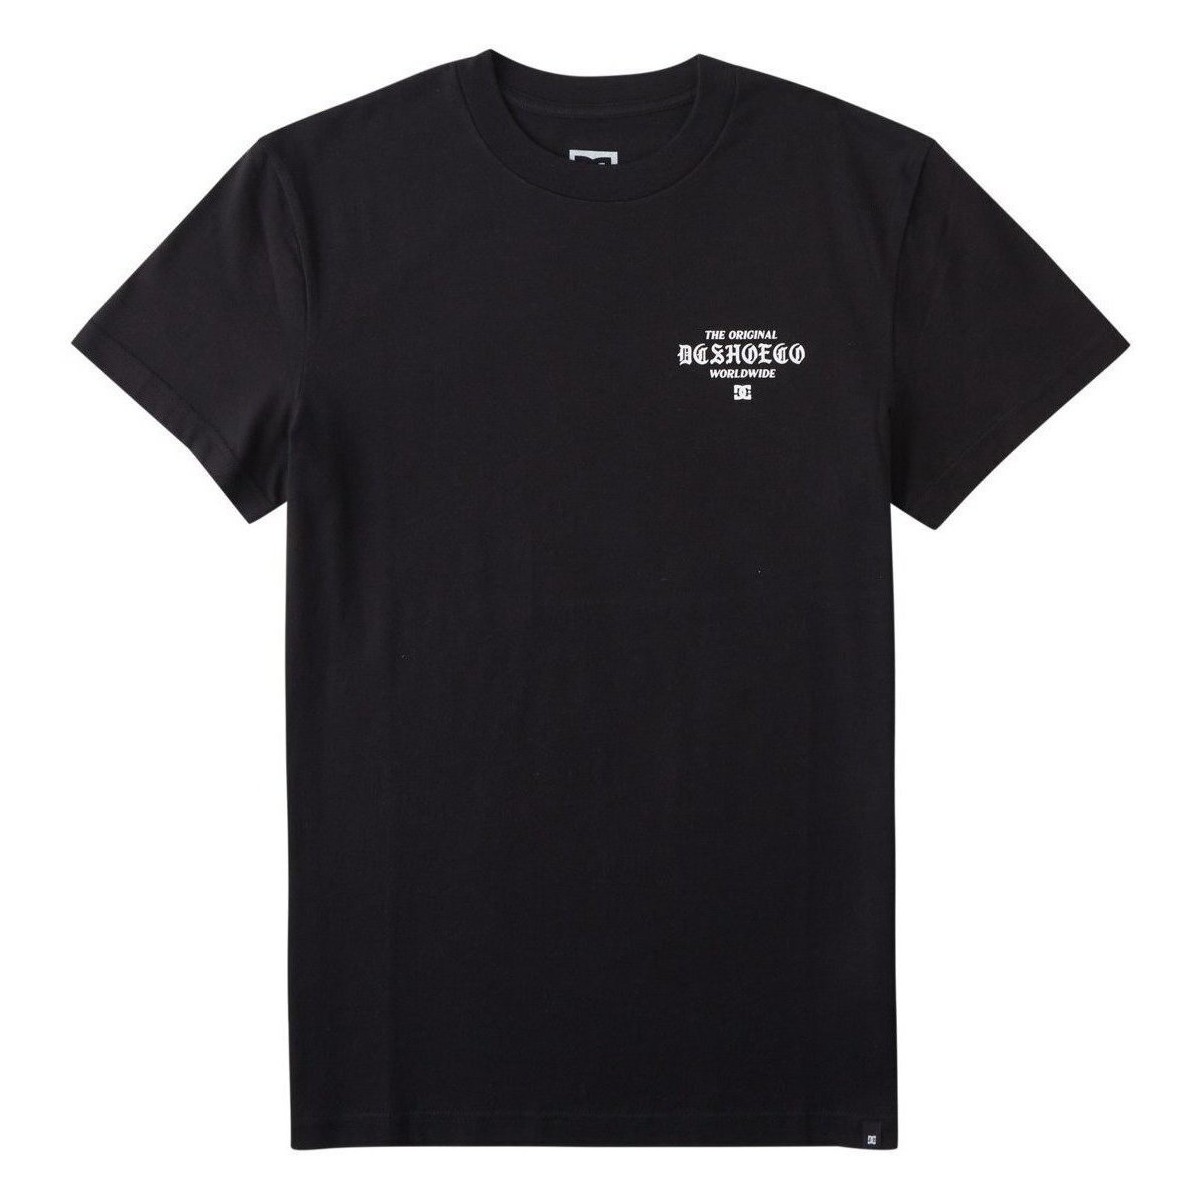 Vêtements Homme Débardeurs / T-shirts sans manche DC Shoes Boxed In Noir